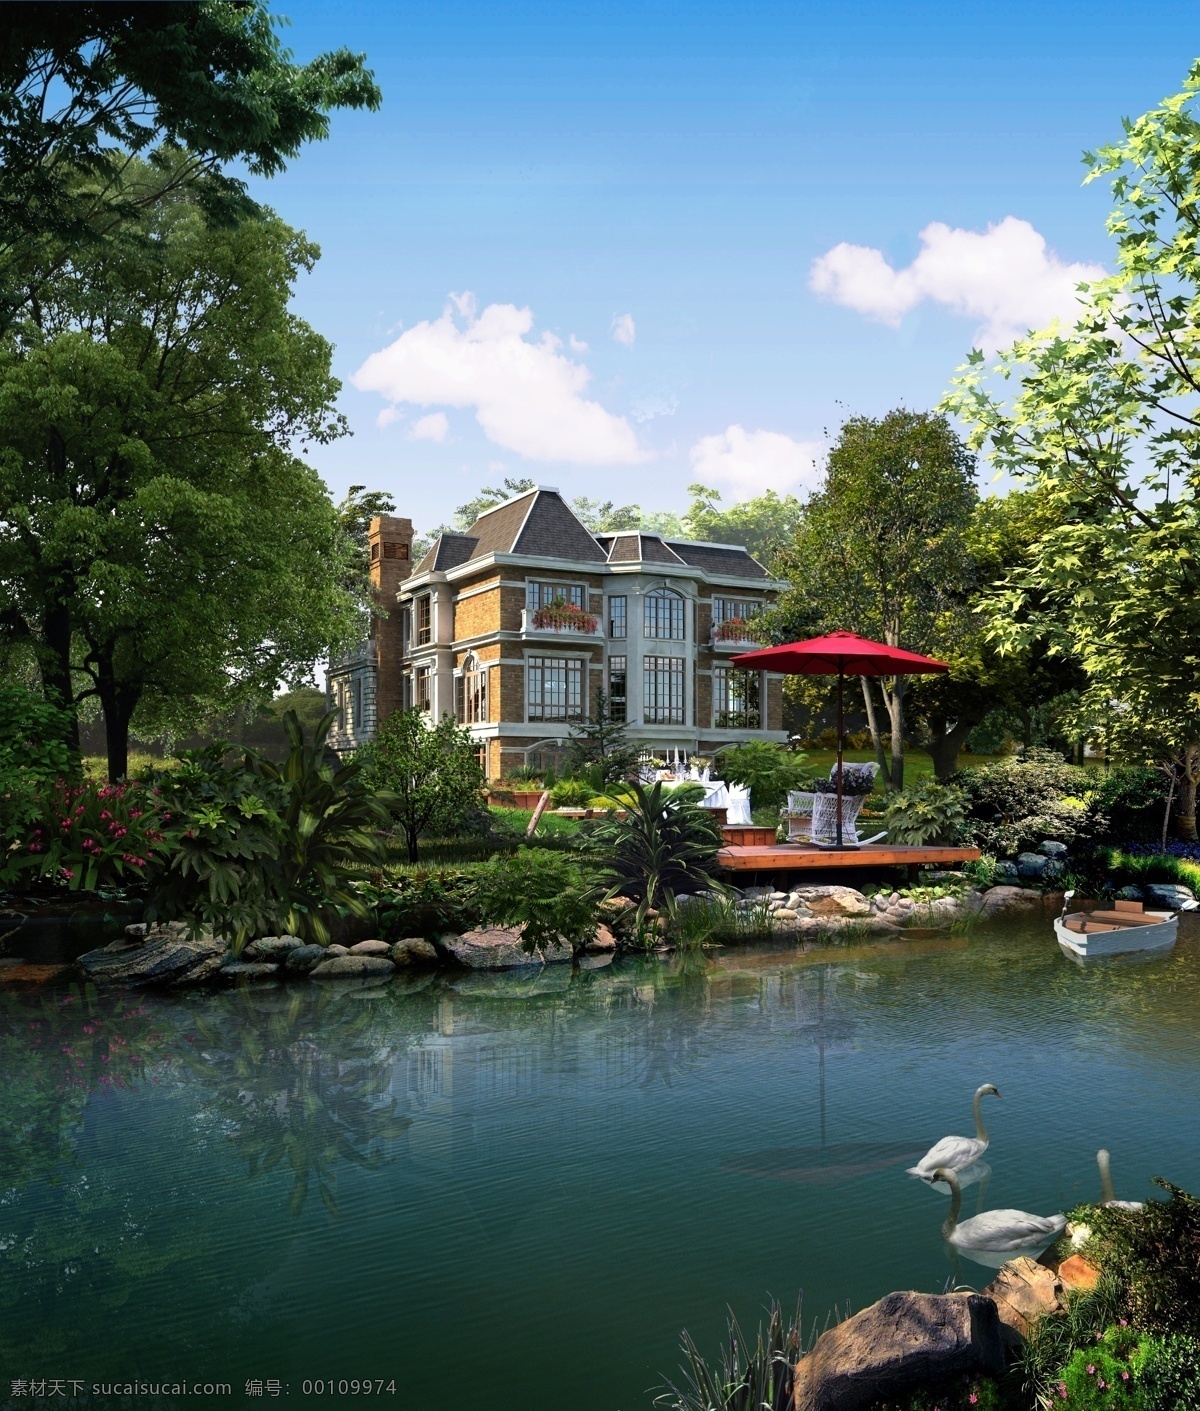 池塘 别墅 景观设计 天鹅 石头 喷泉 草地 树木 房屋 建筑物 蓝天 白云 环境设计